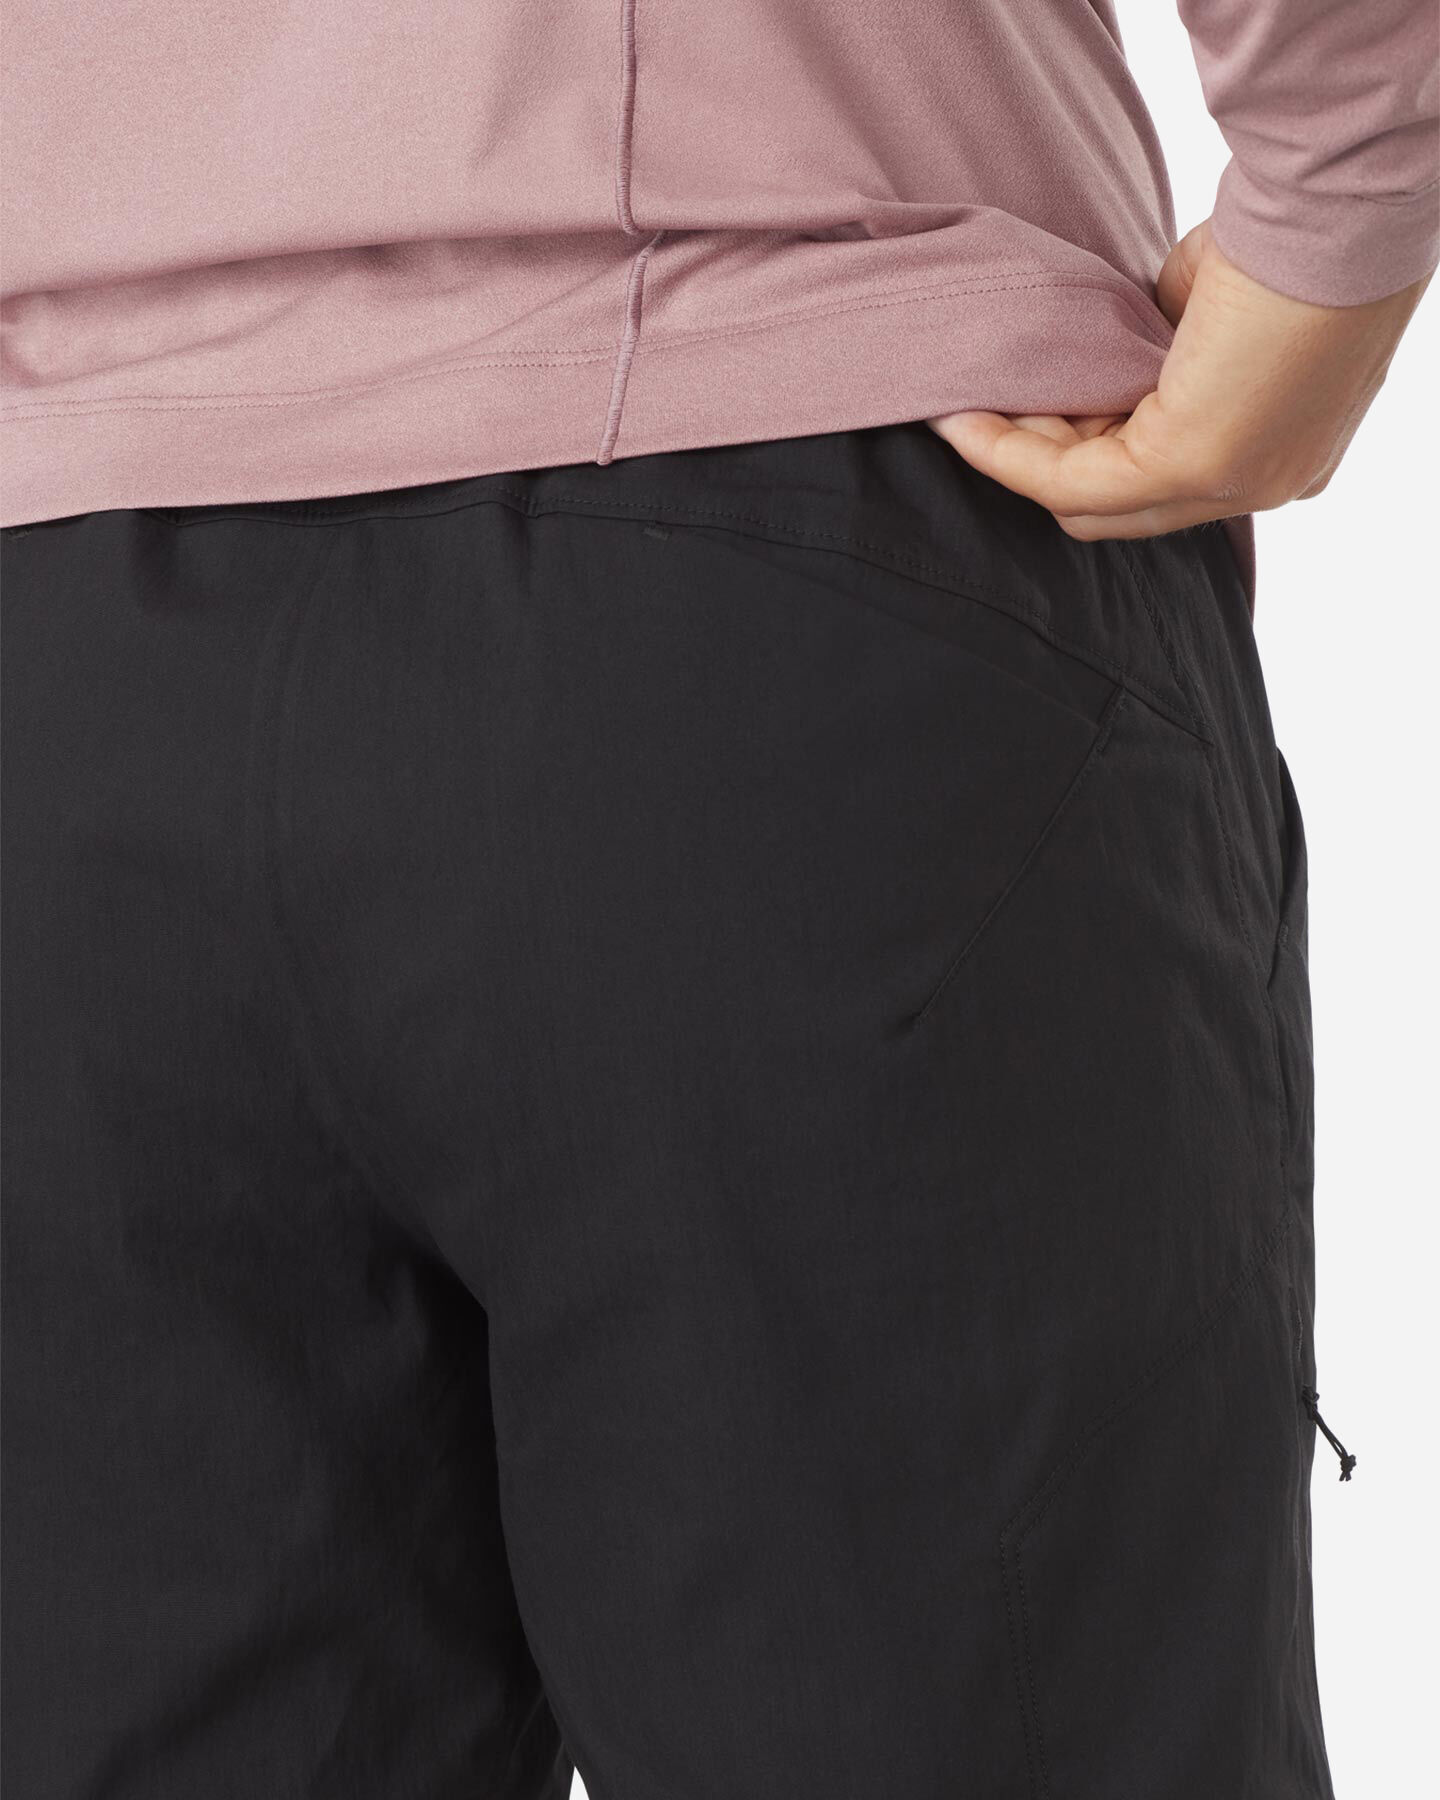  Pantaloncini ARC'TERYX KONSEAL 7.5" W S4089778|1|2 scatto 4